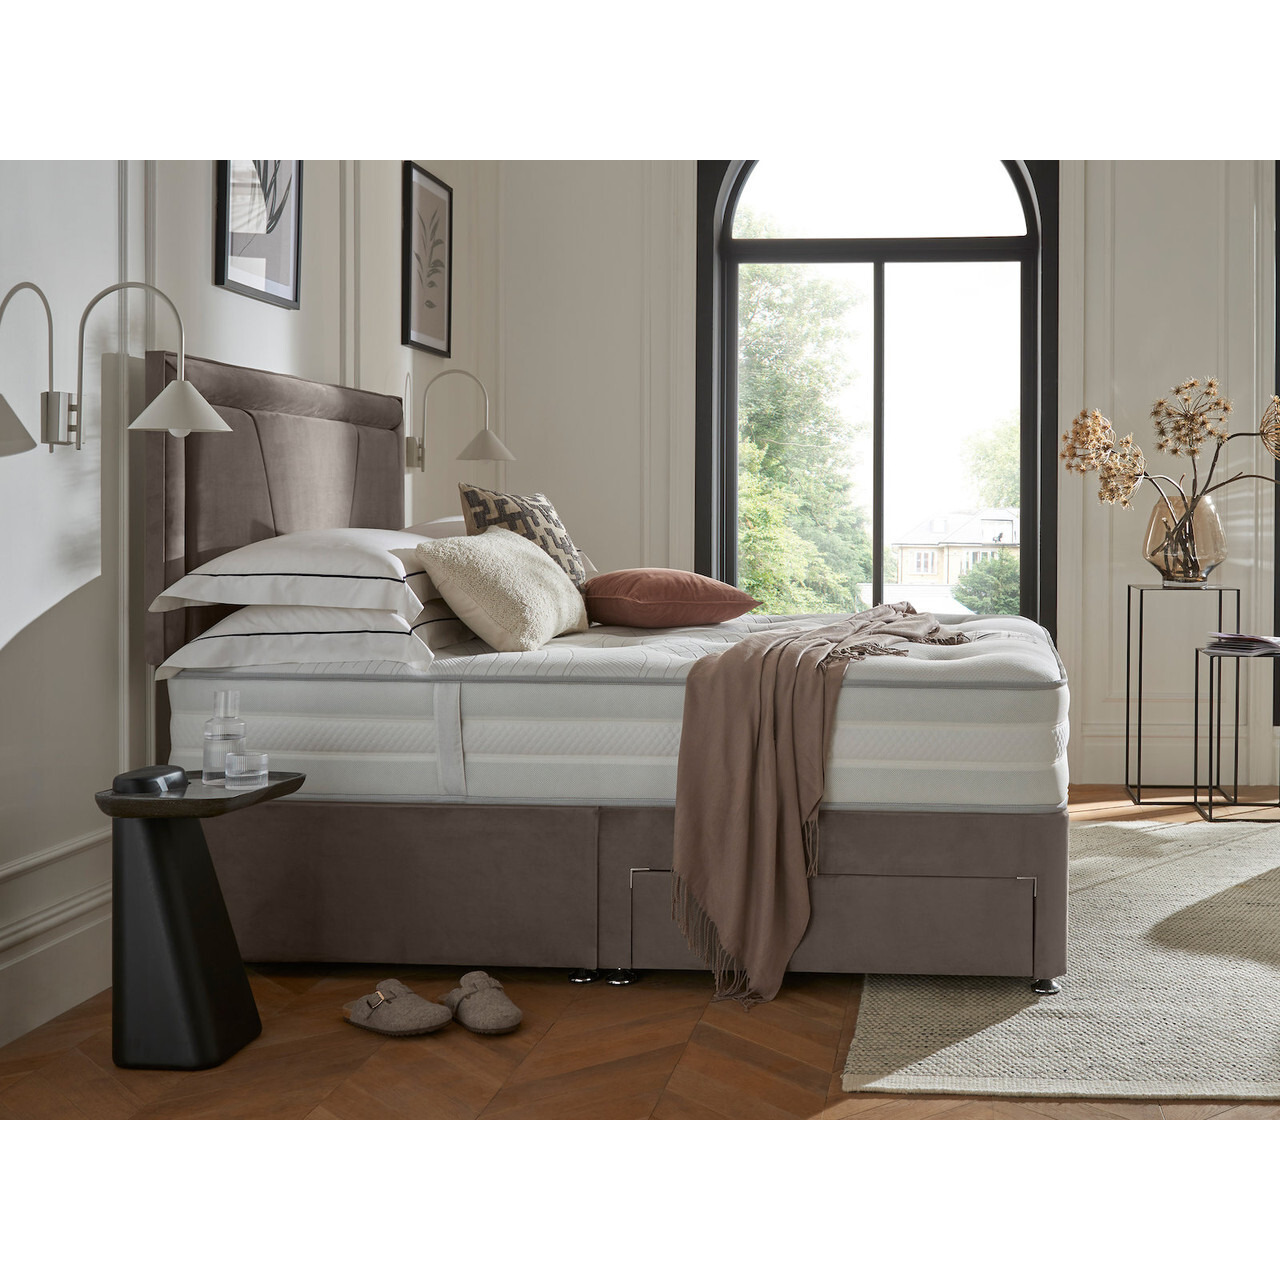 Silentnight 2000 Eco Dual Supreme Comfort Tufted Divan Bed Set - image 1